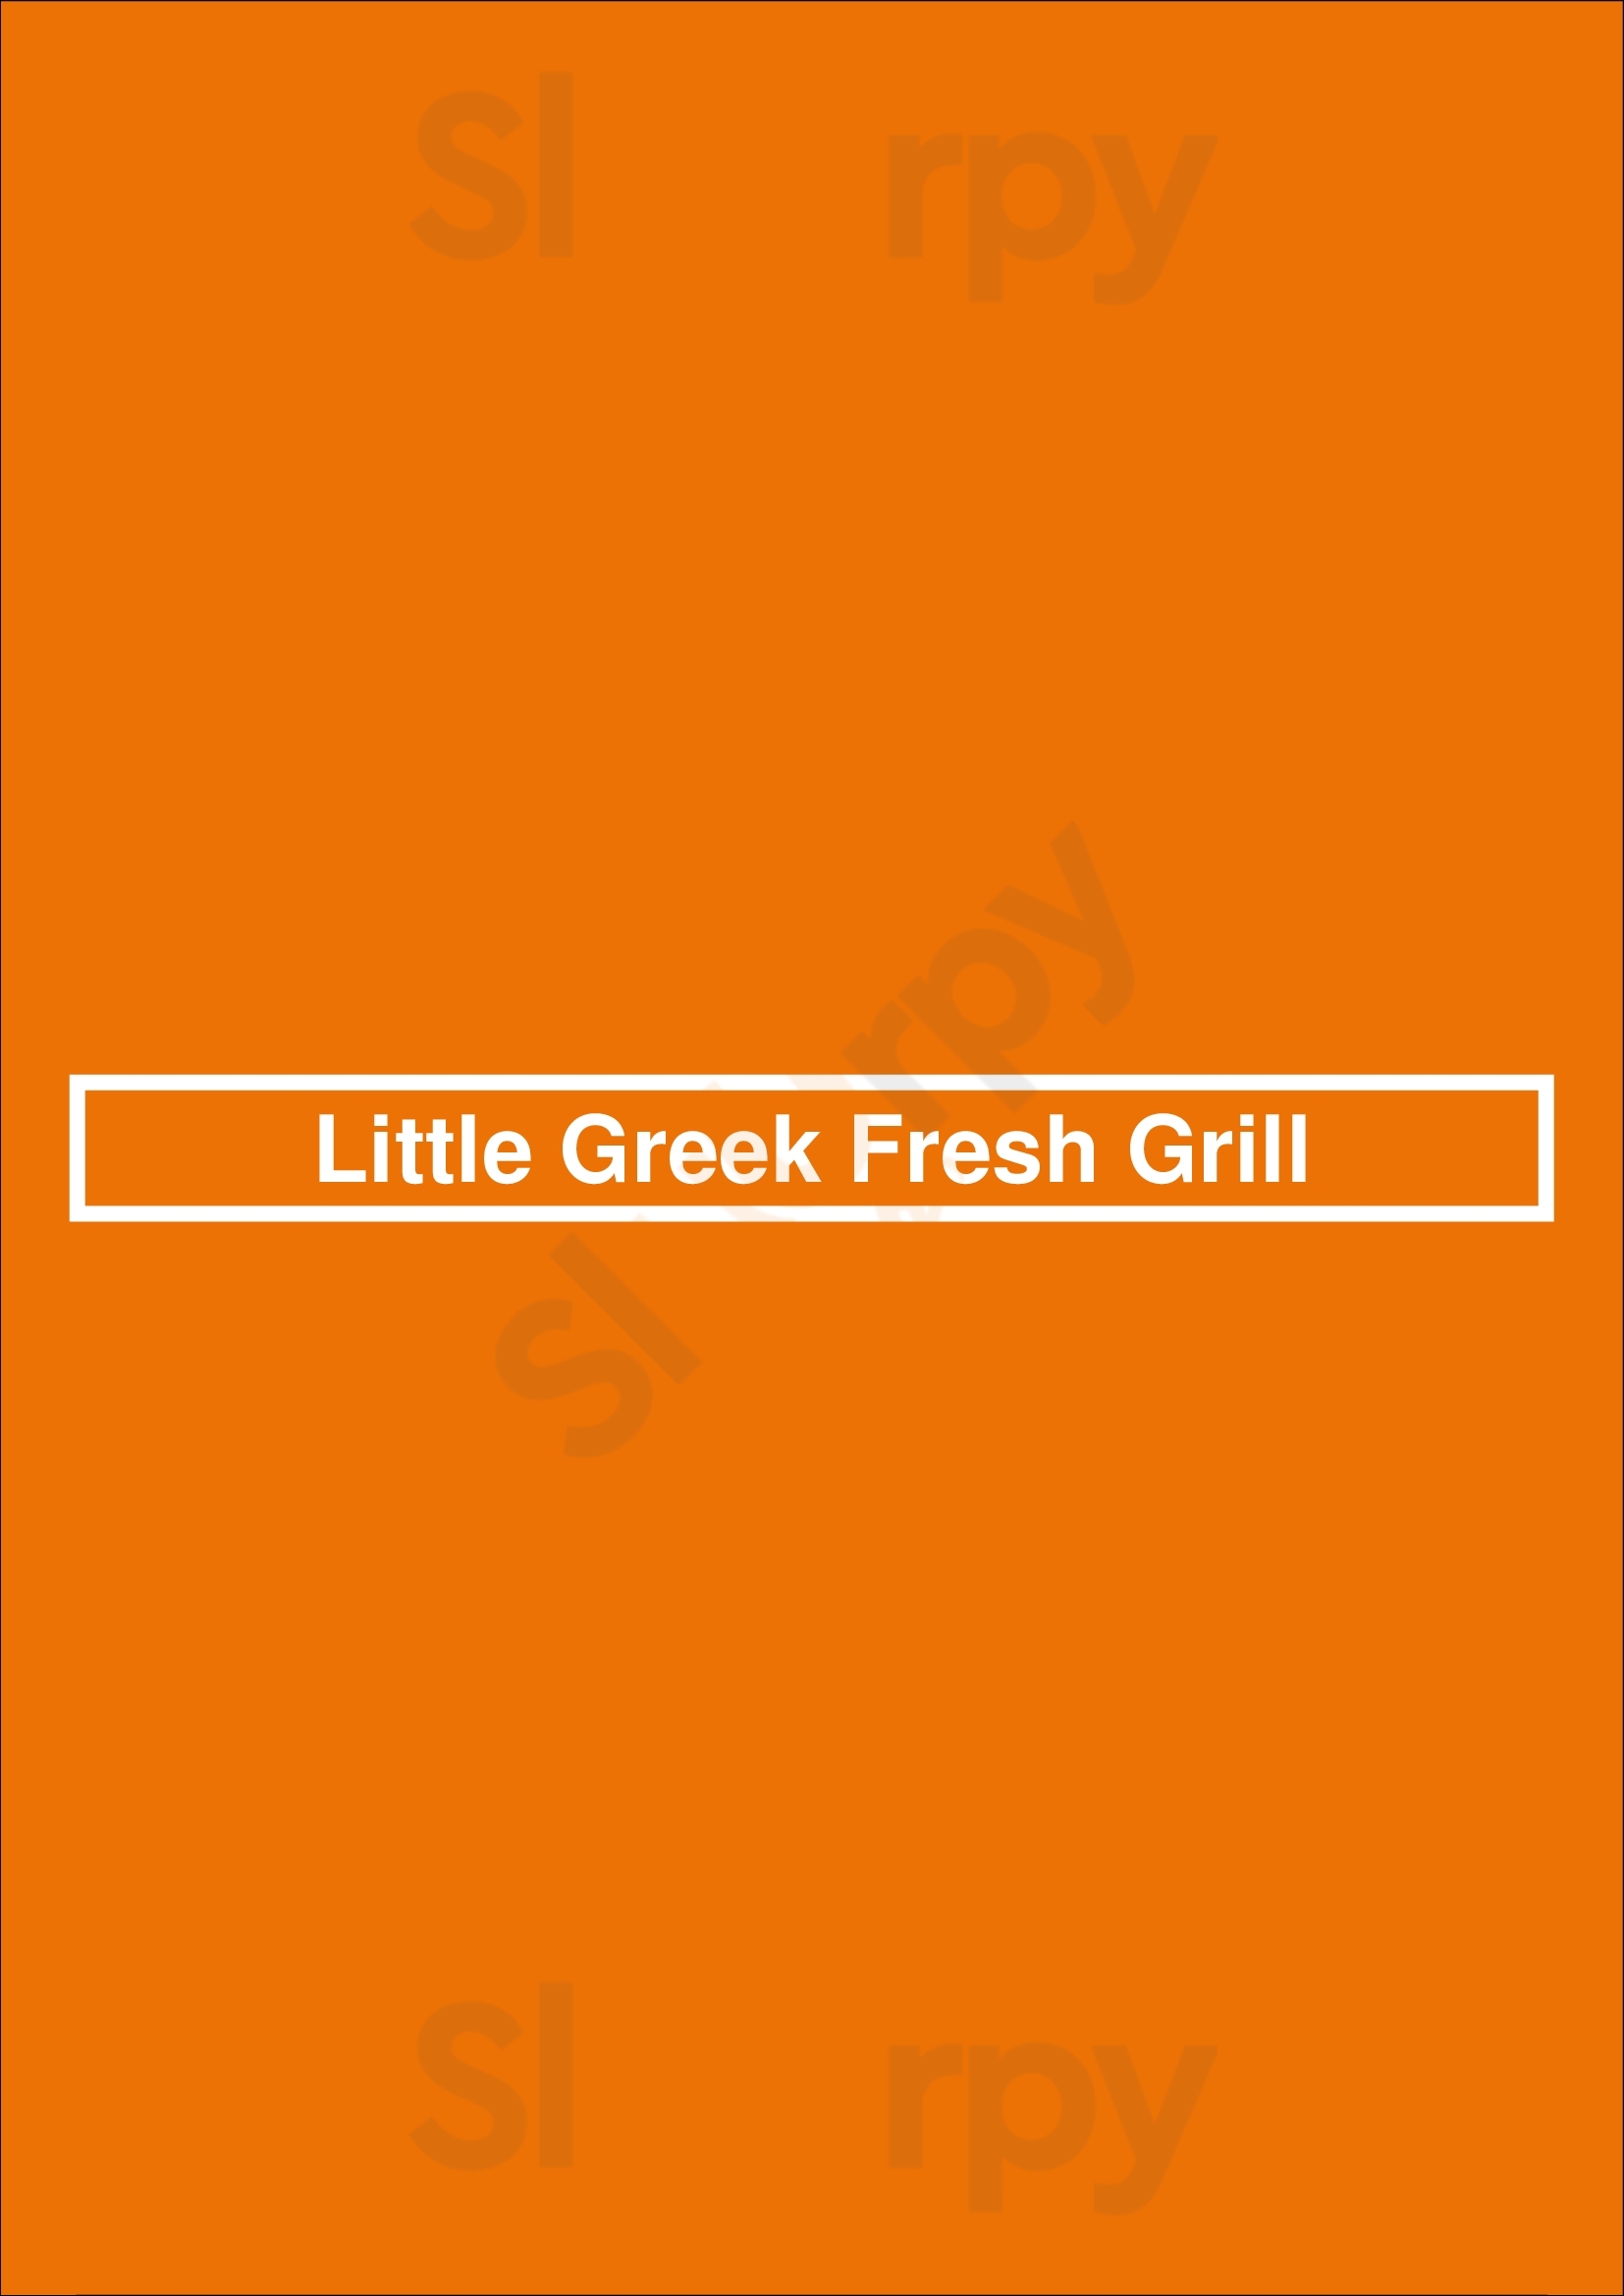 Little Greek Fresh Grill Addison Menu - 1